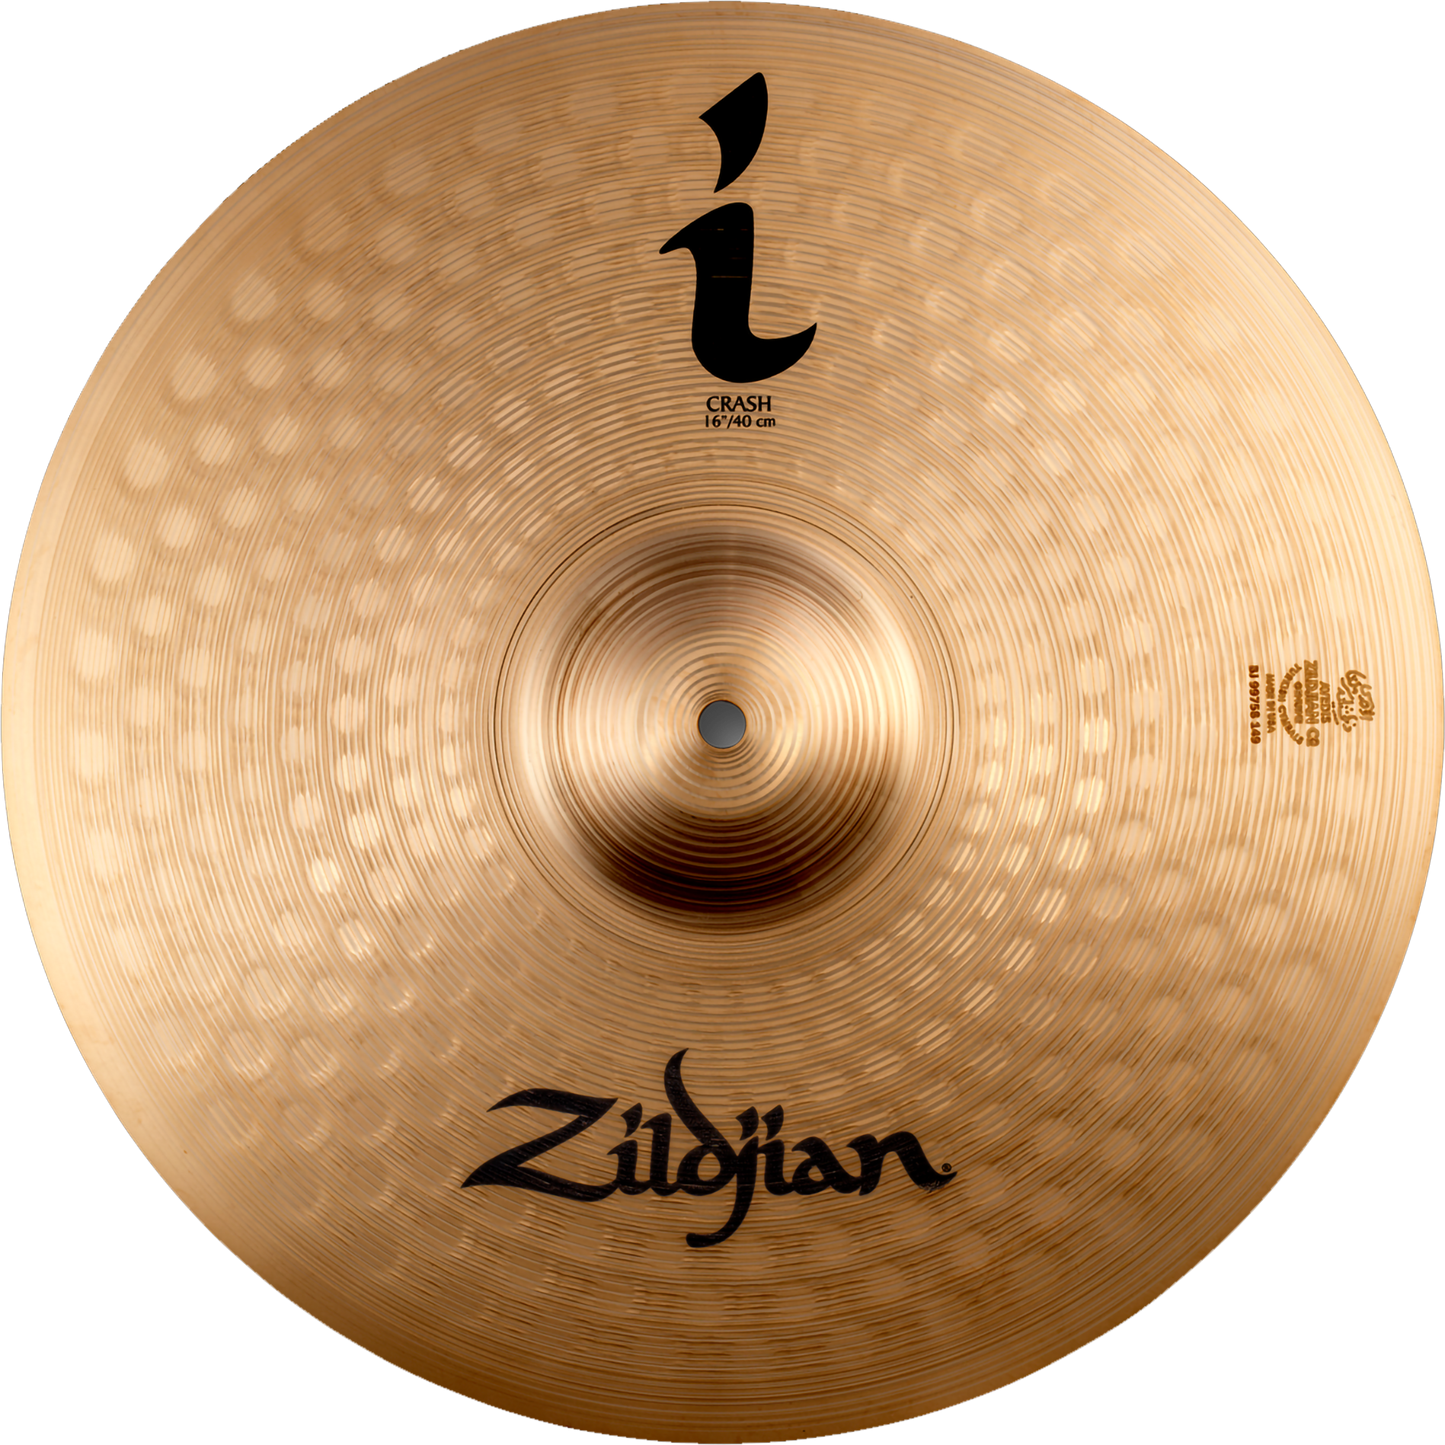 Zildjian 16” I Family Crash Cymbal